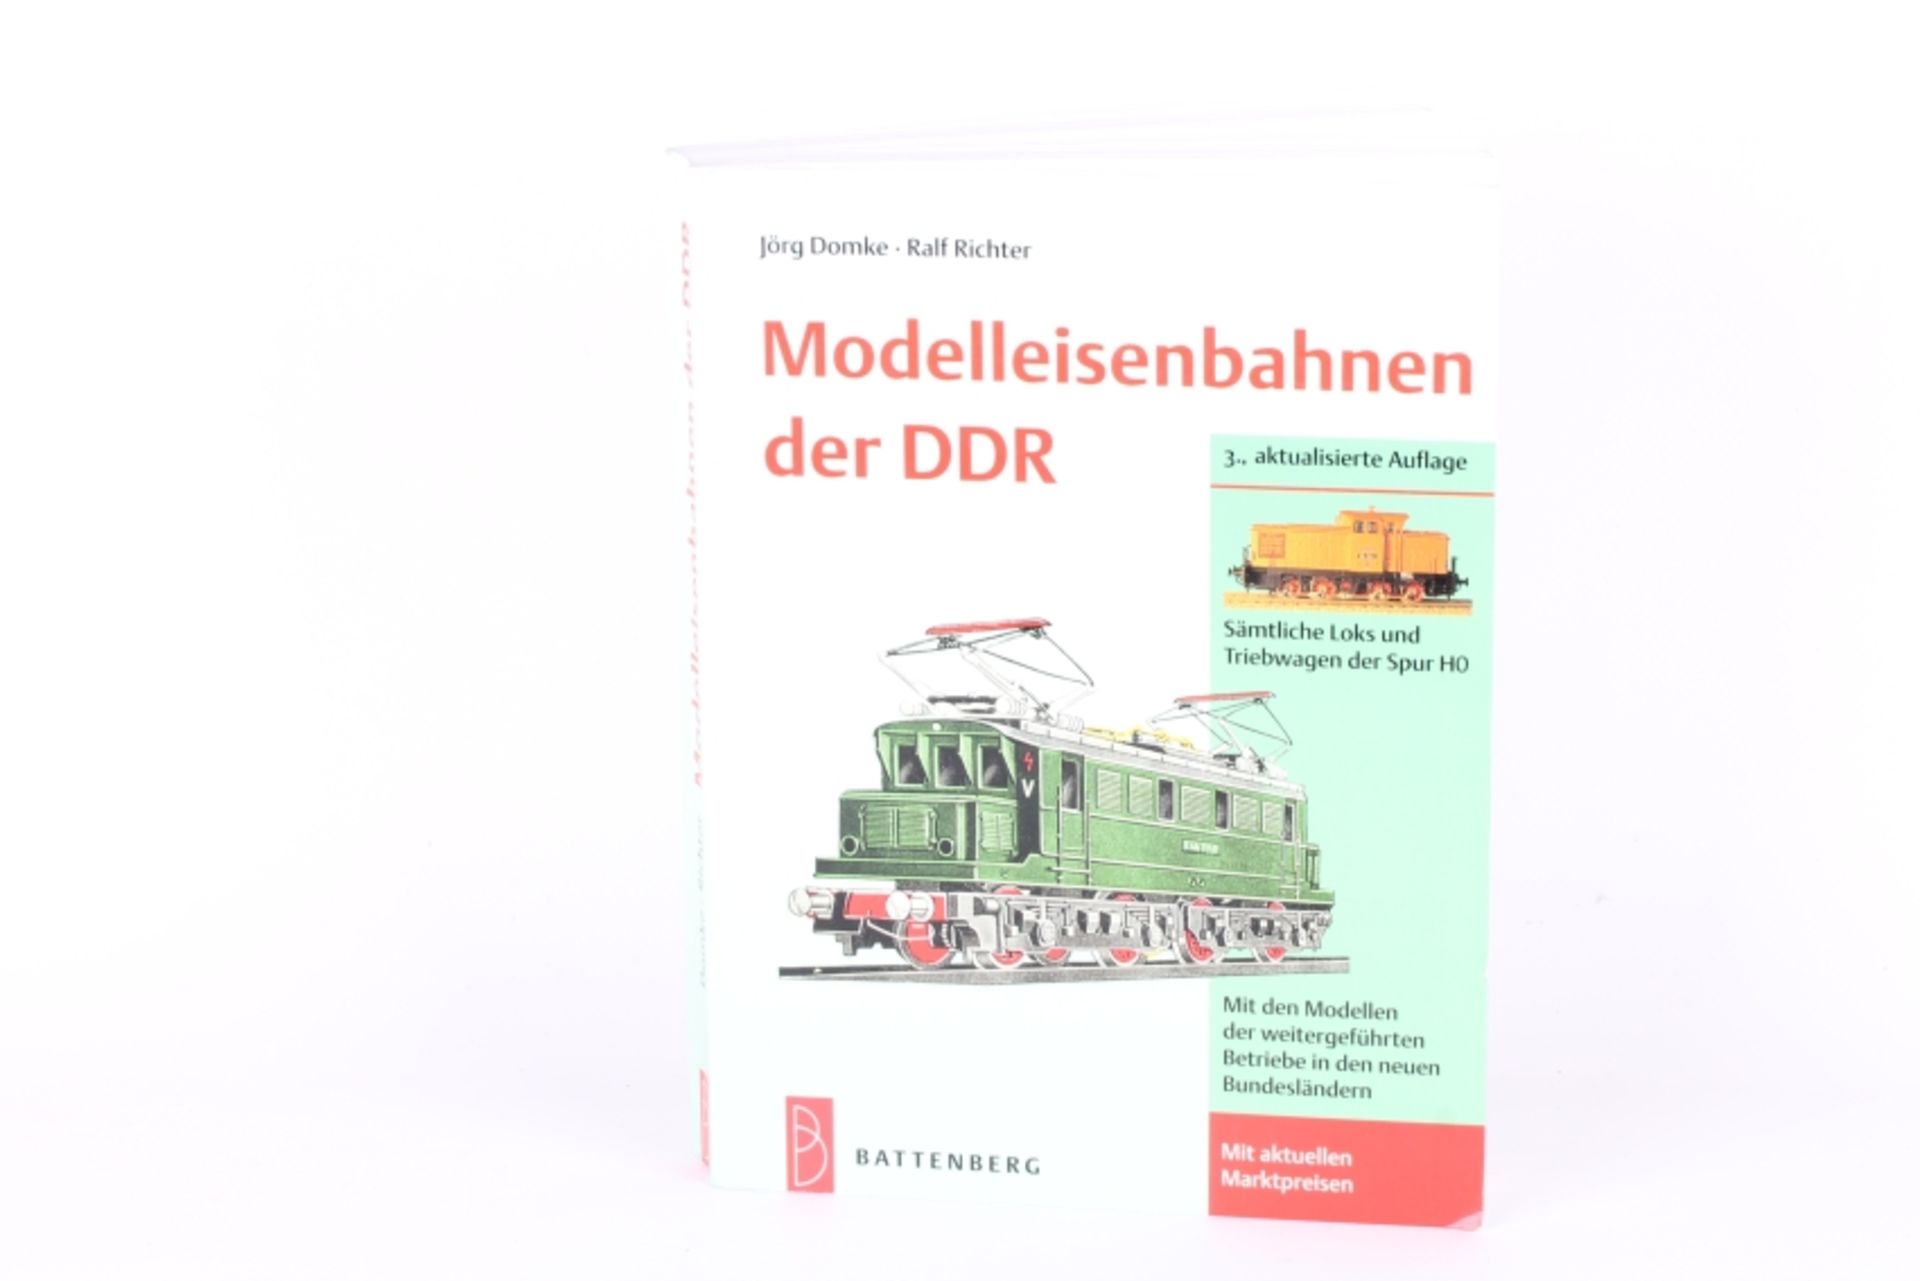 Jörg Domke, Ralf Richter "Modelleisenbahnen der DDR" Jörg Domke, Ralf Richter "Modelleisenbahnen der